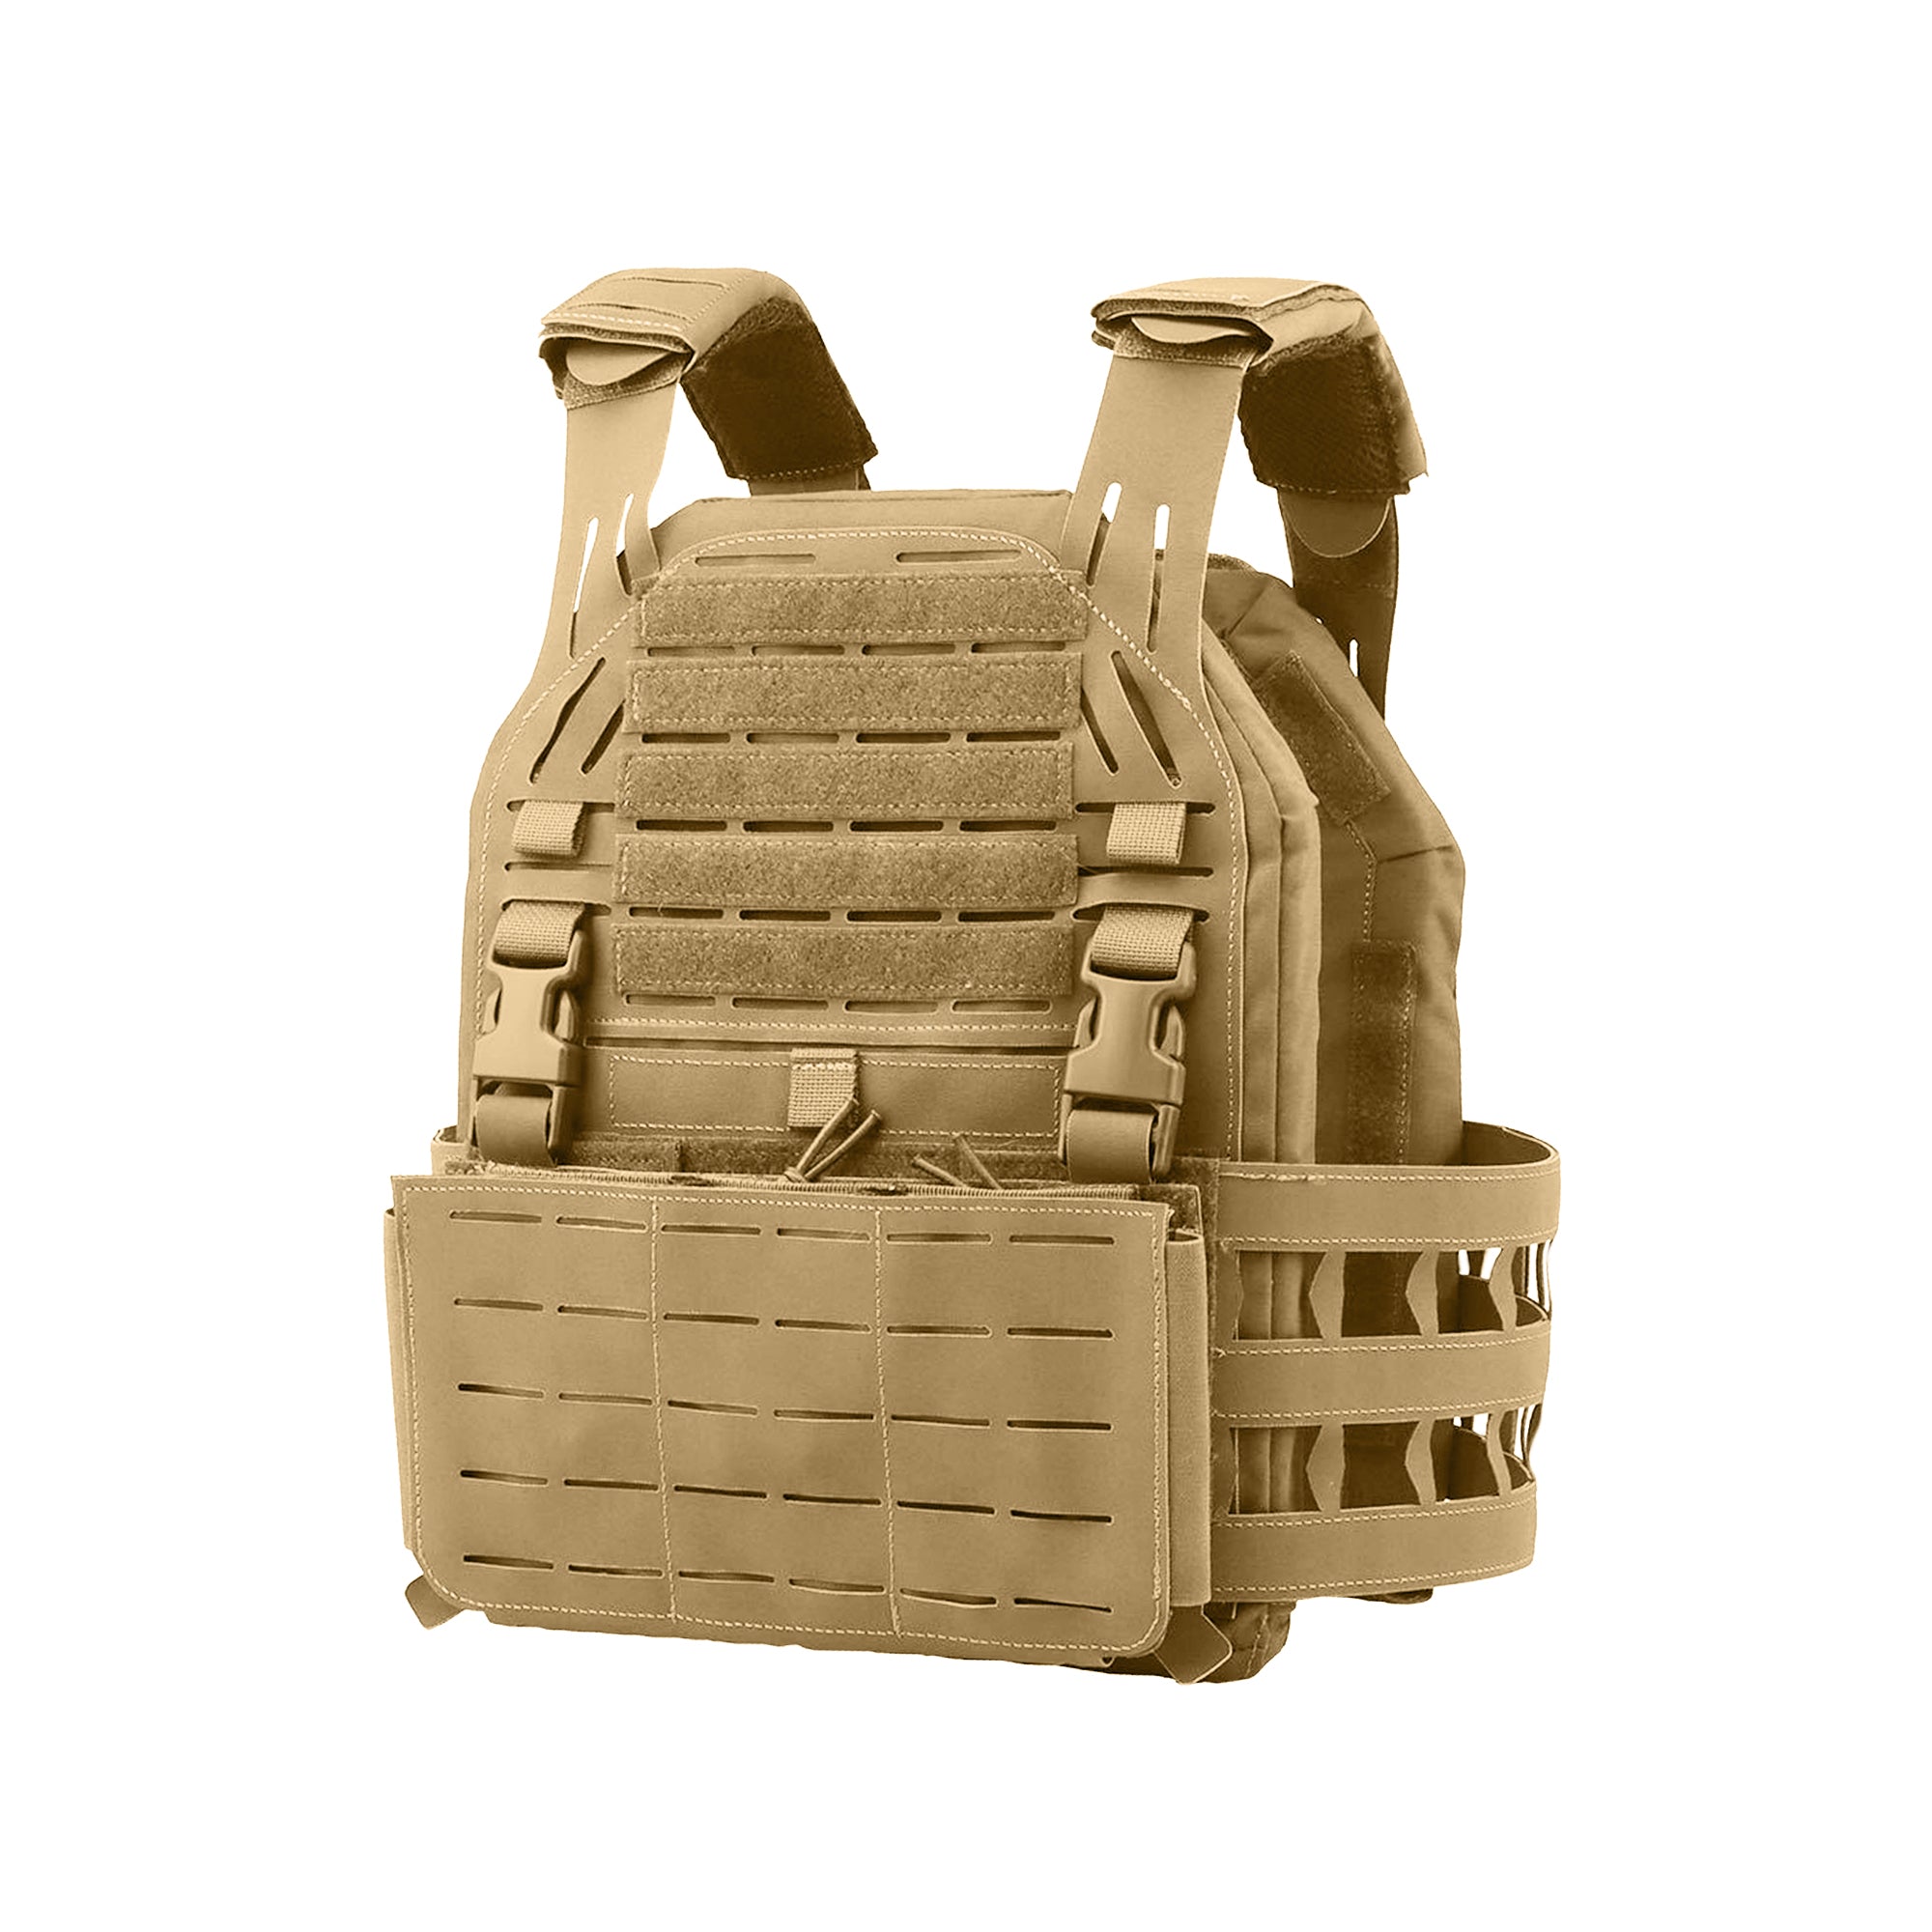 Tactical Battle plate vest with battle vest - Blacktide Concepts Tactical Gear